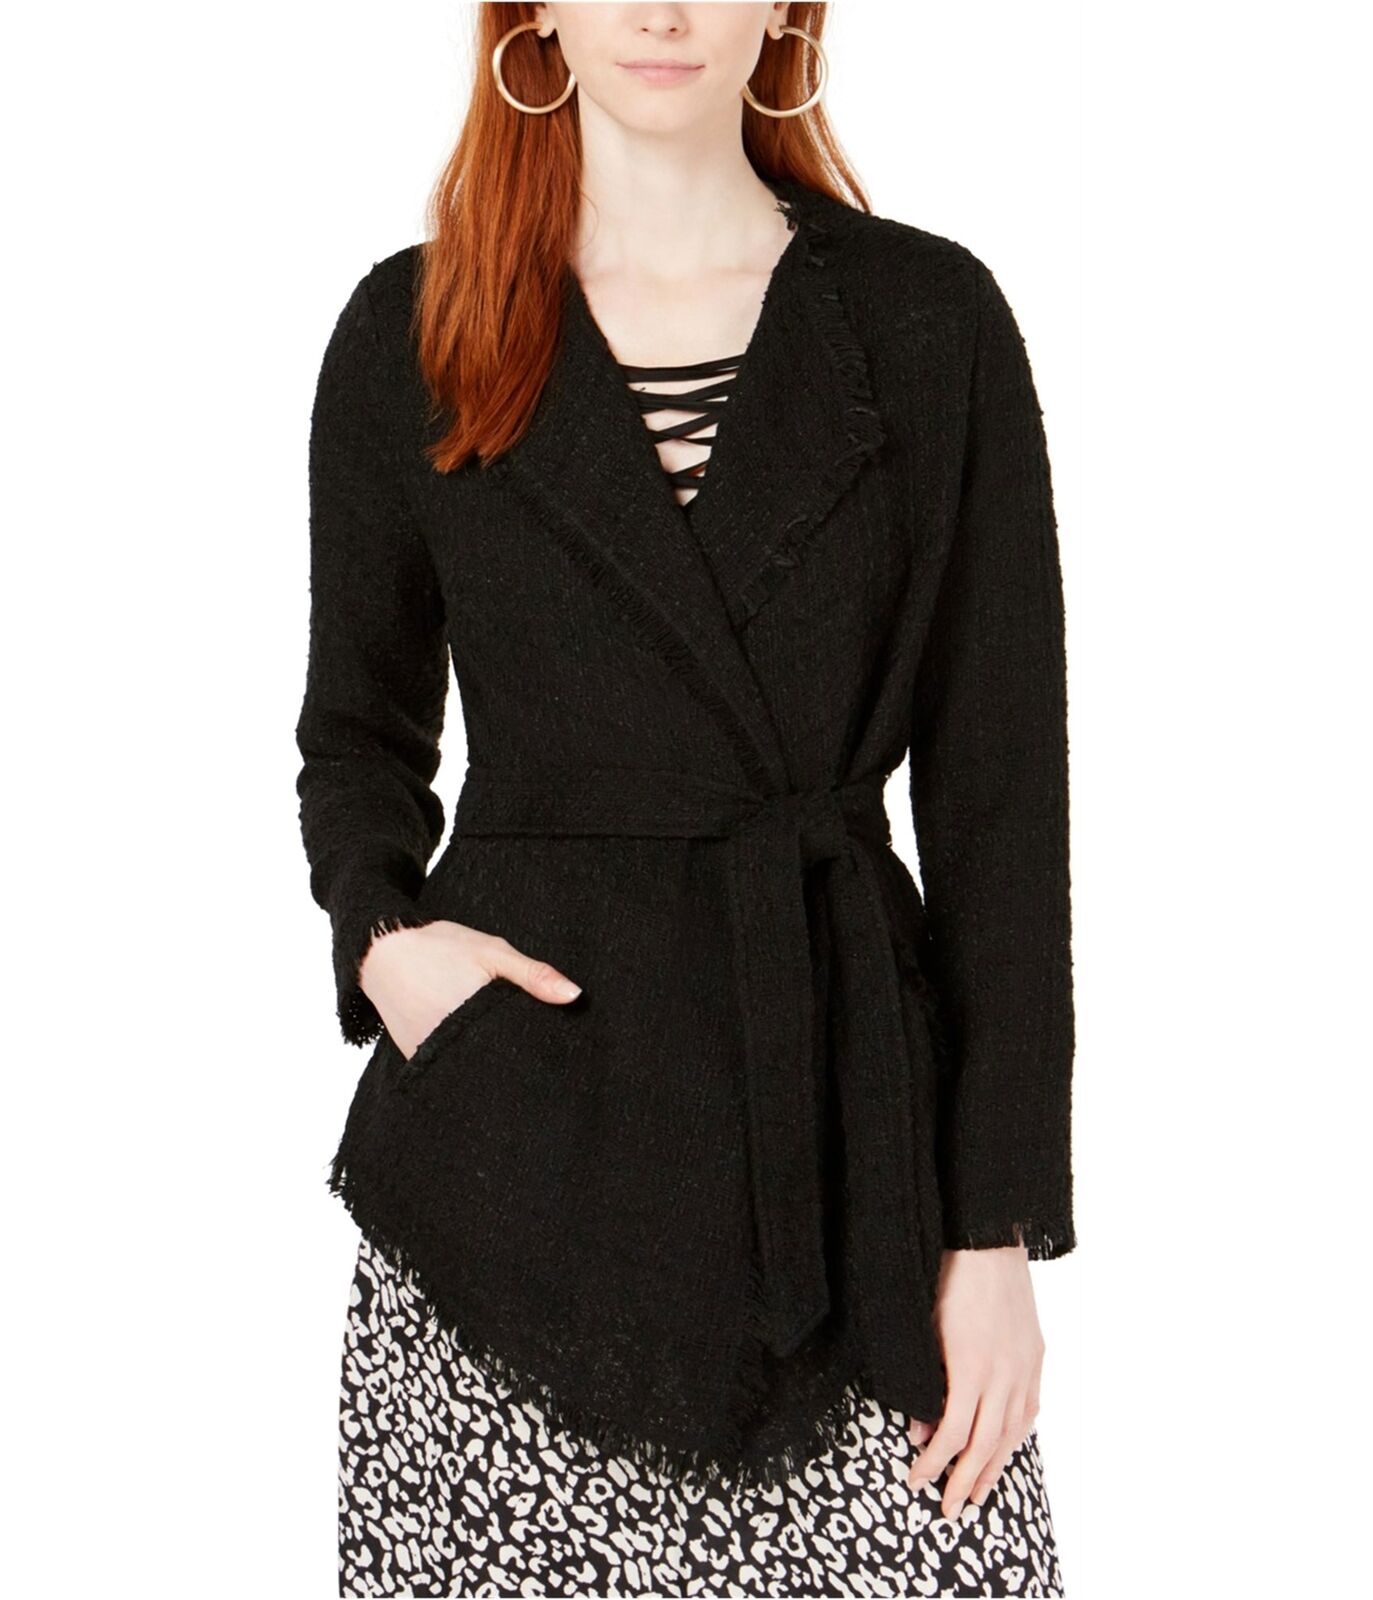 Ginger Womens Lace Boucle Jacket, Black, Medium